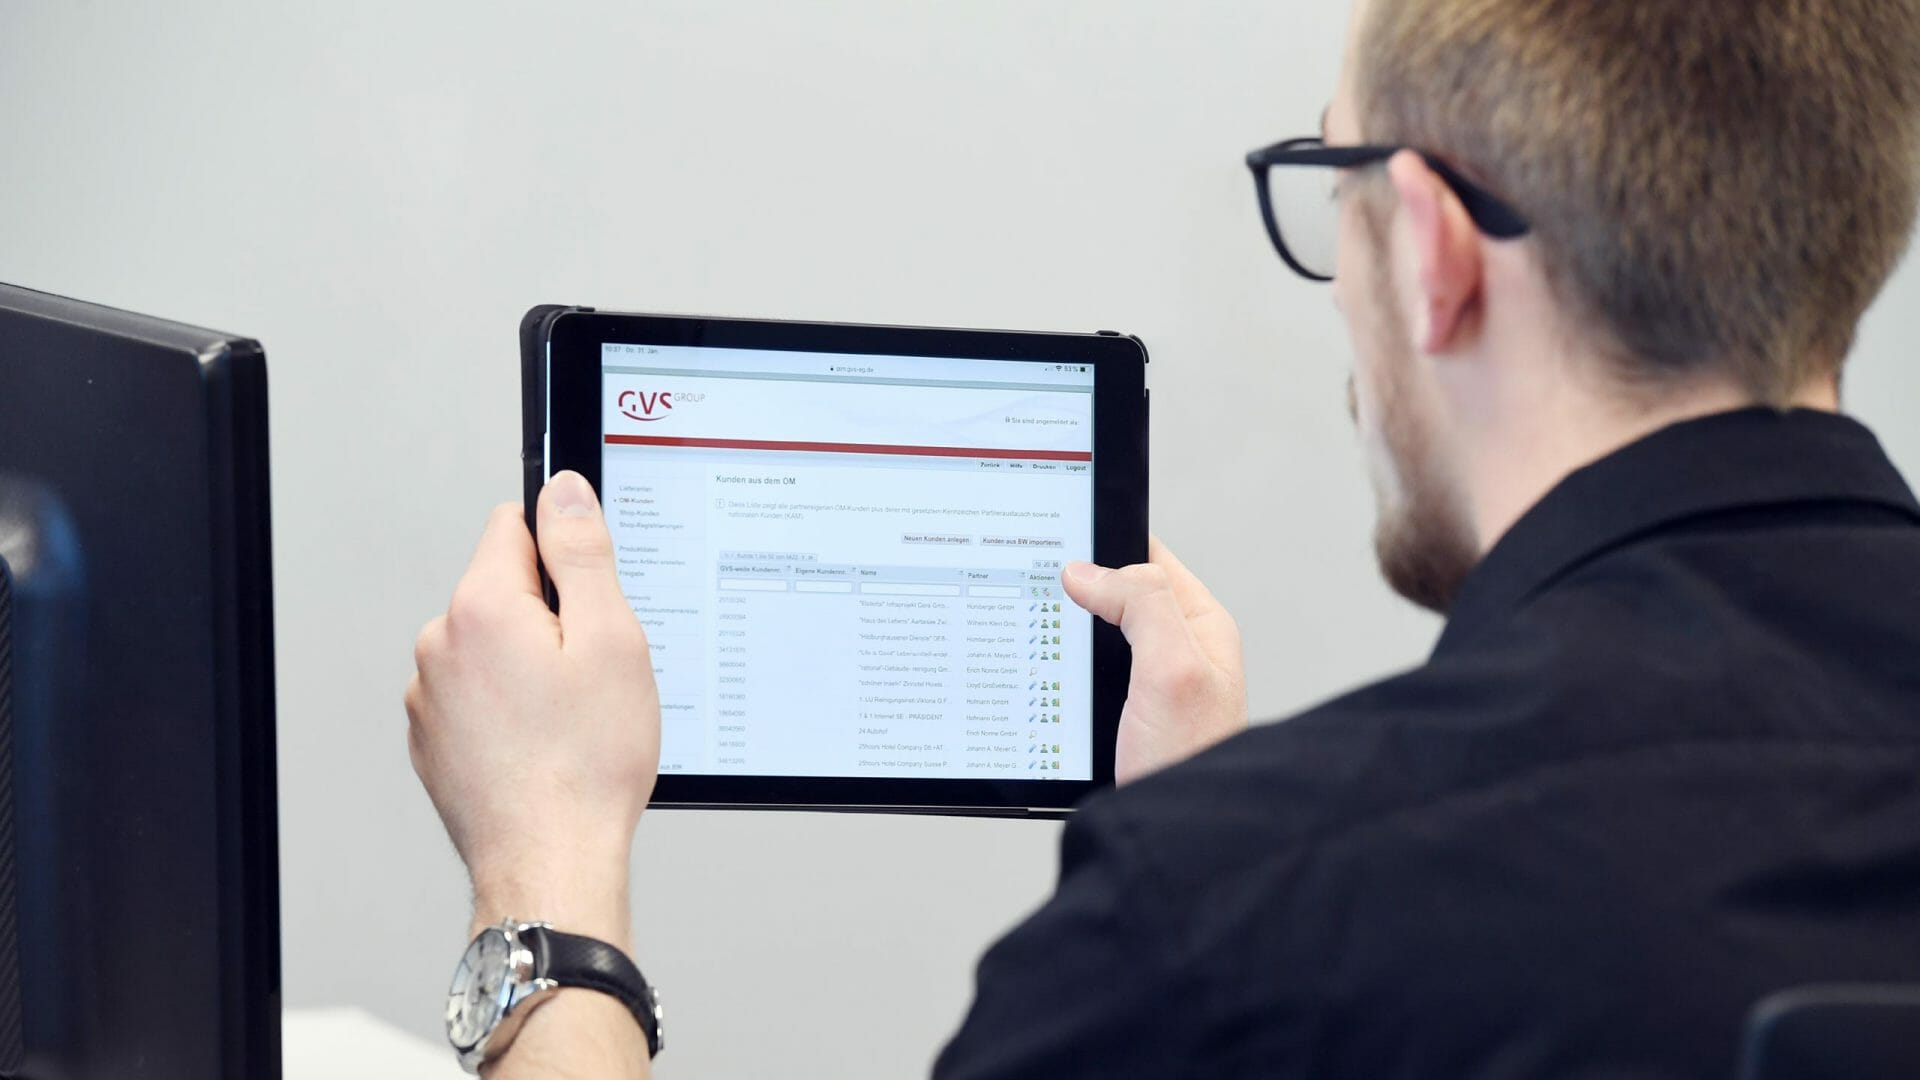 GVS Group-Mitarbeiter hält Tablet, das die Bestellplattform GVS-ORDERMANAGER für Großkunden zeigt